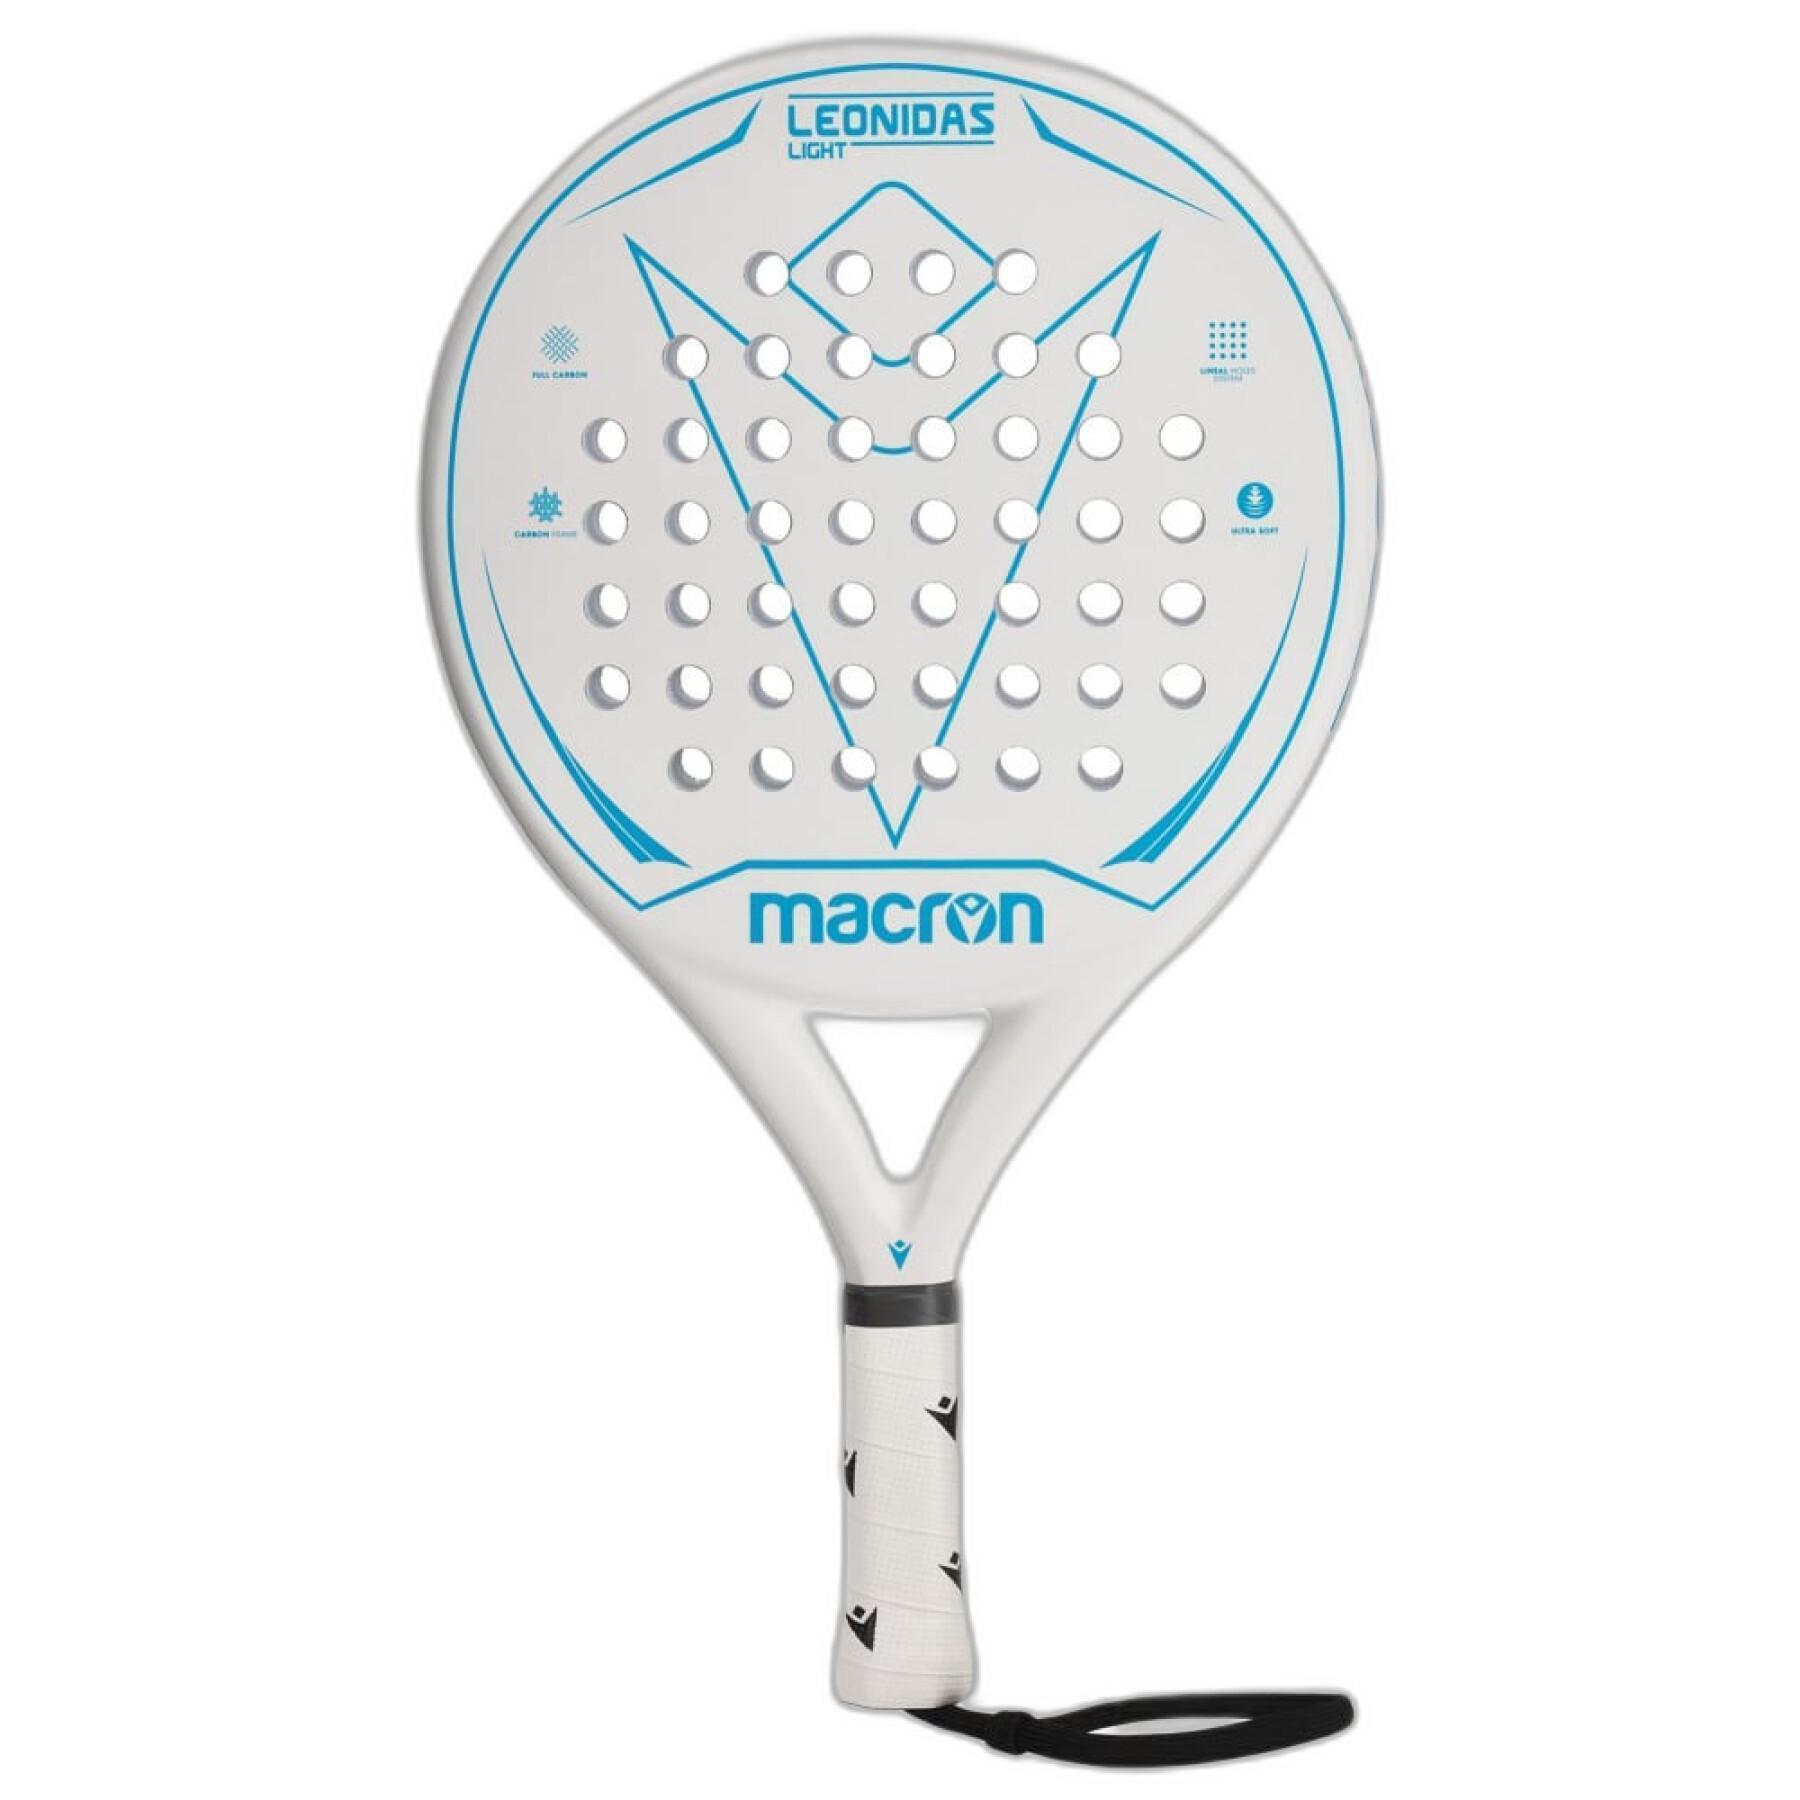 Paddle racket Macron CC Leonidas Light